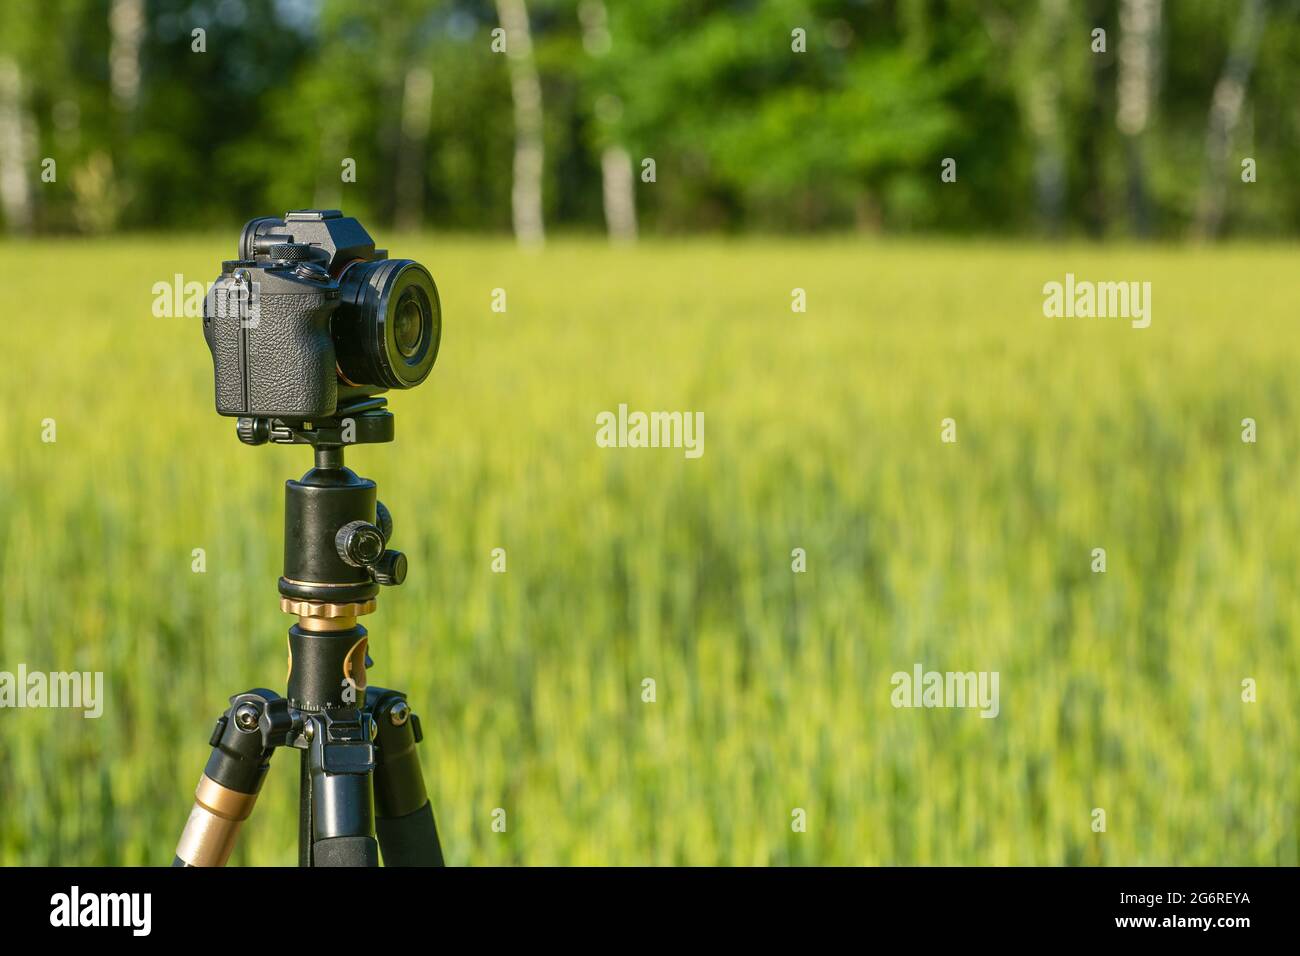 Eine Kamera mit einem Objektiv auf einem Stativ, bereit für Fotos oder  Videos in der Natur. Fotografieren und Filmen von Landschaften, Wildtieren.  Hochwertige Fotos Stockfotografie - Alamy